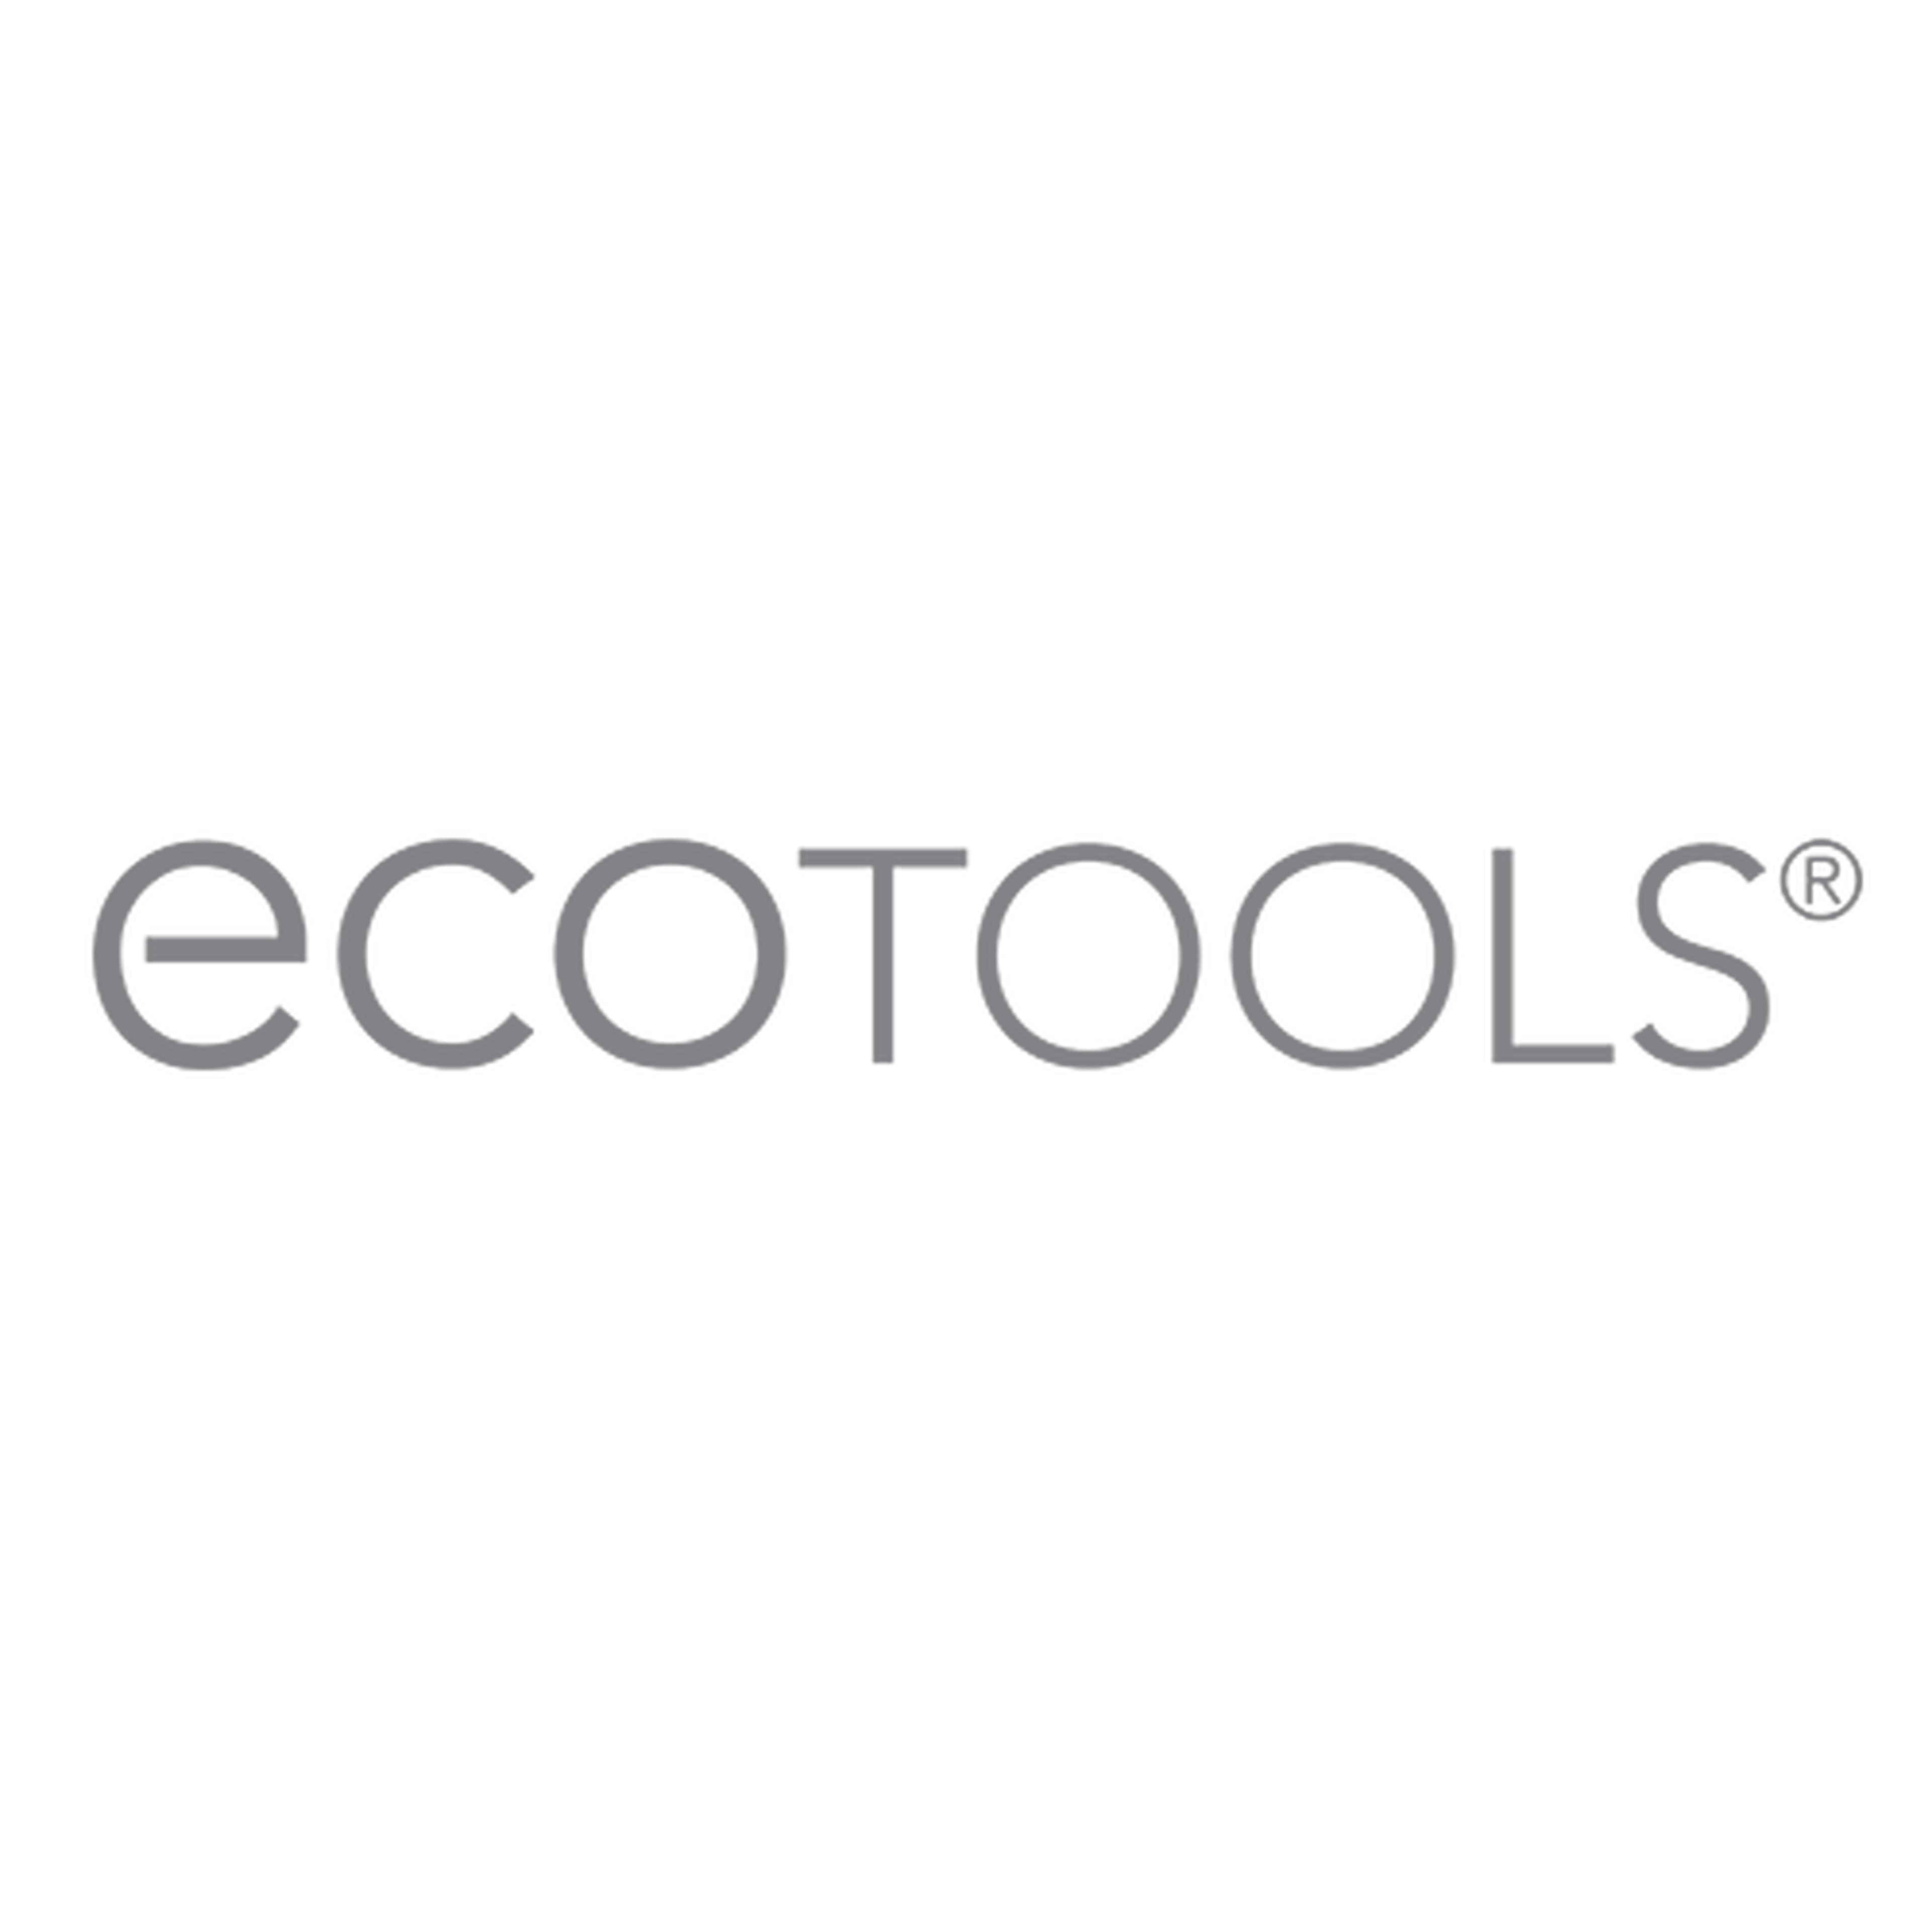 Eco Tools logotype